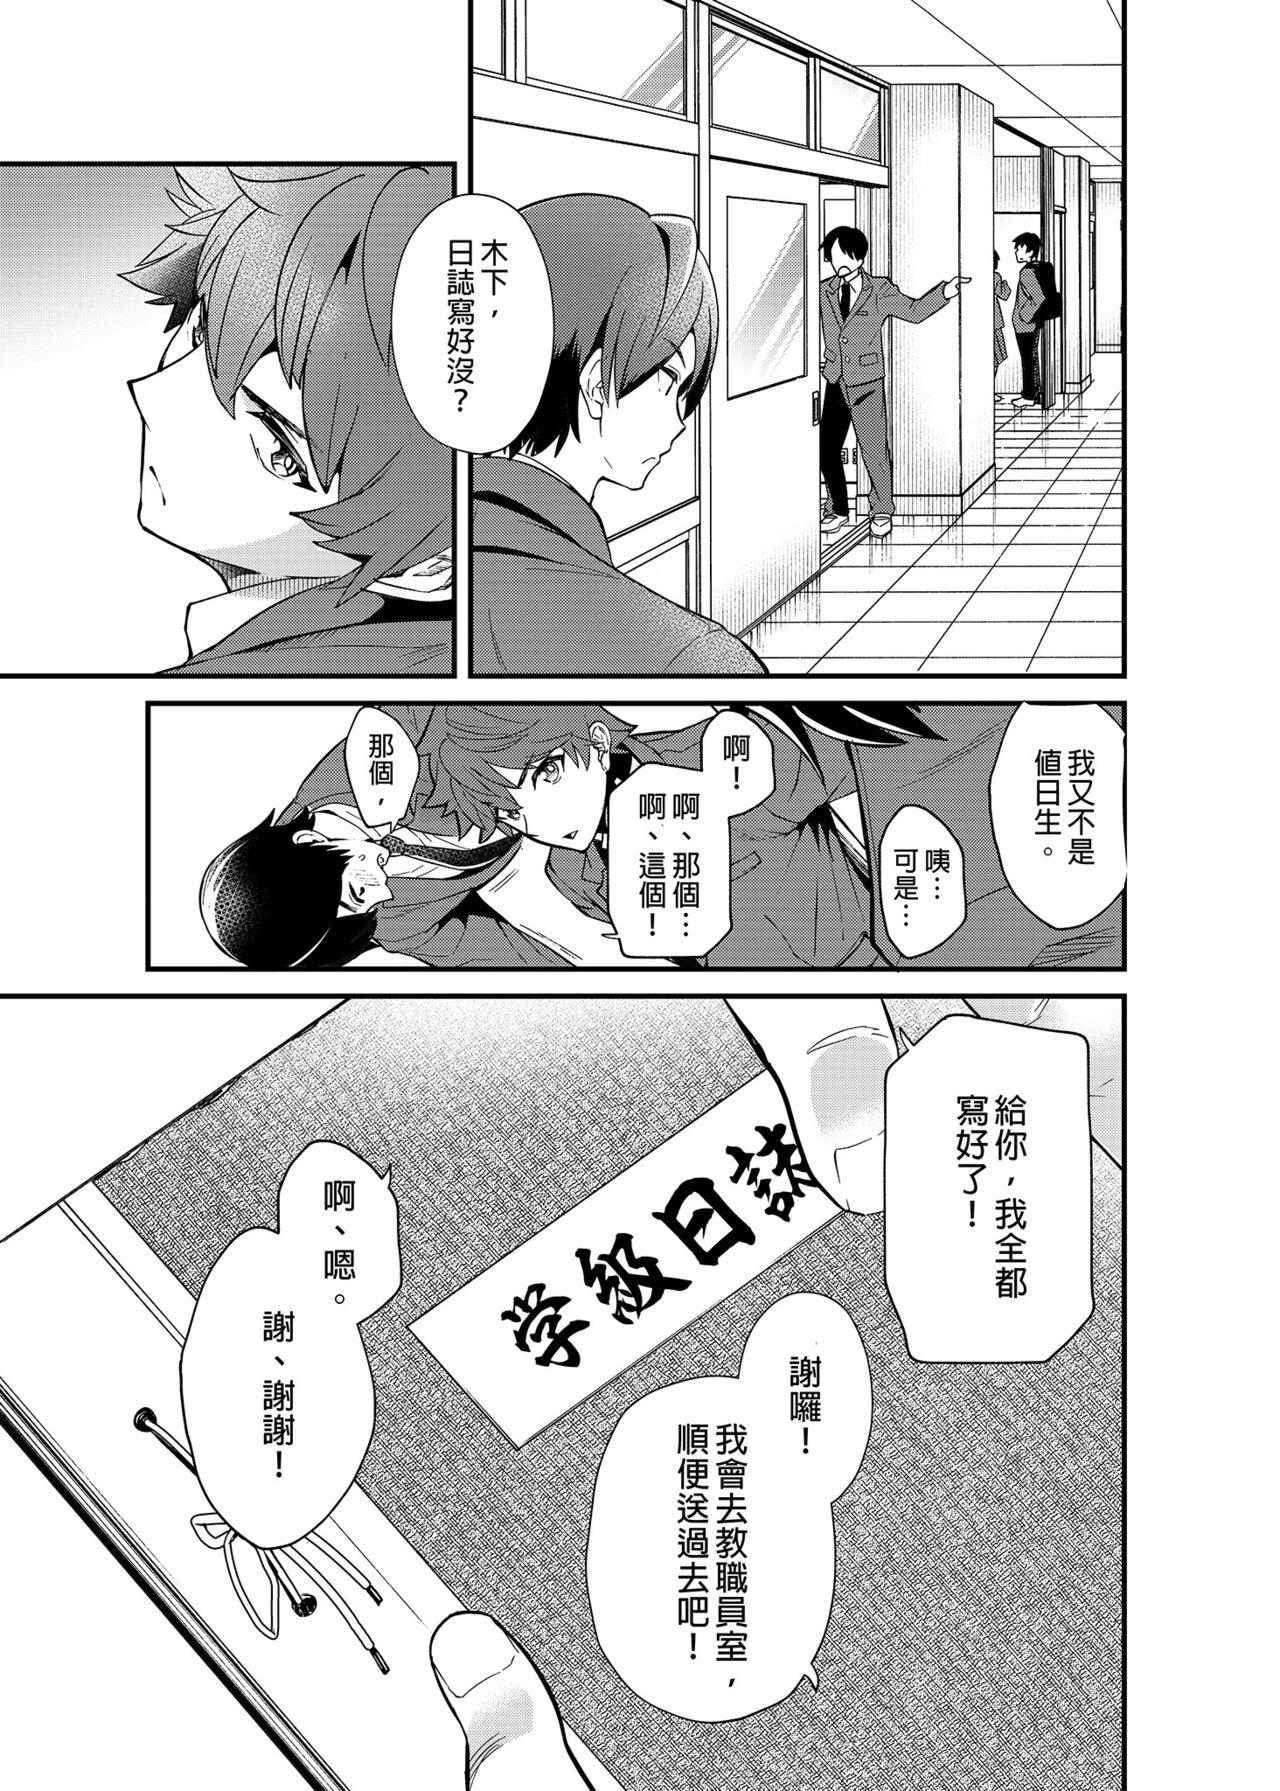 Gozada Kiritsu,ki o tsuke, rei! | 起立、注意、敬禮! - Original And - Page 6